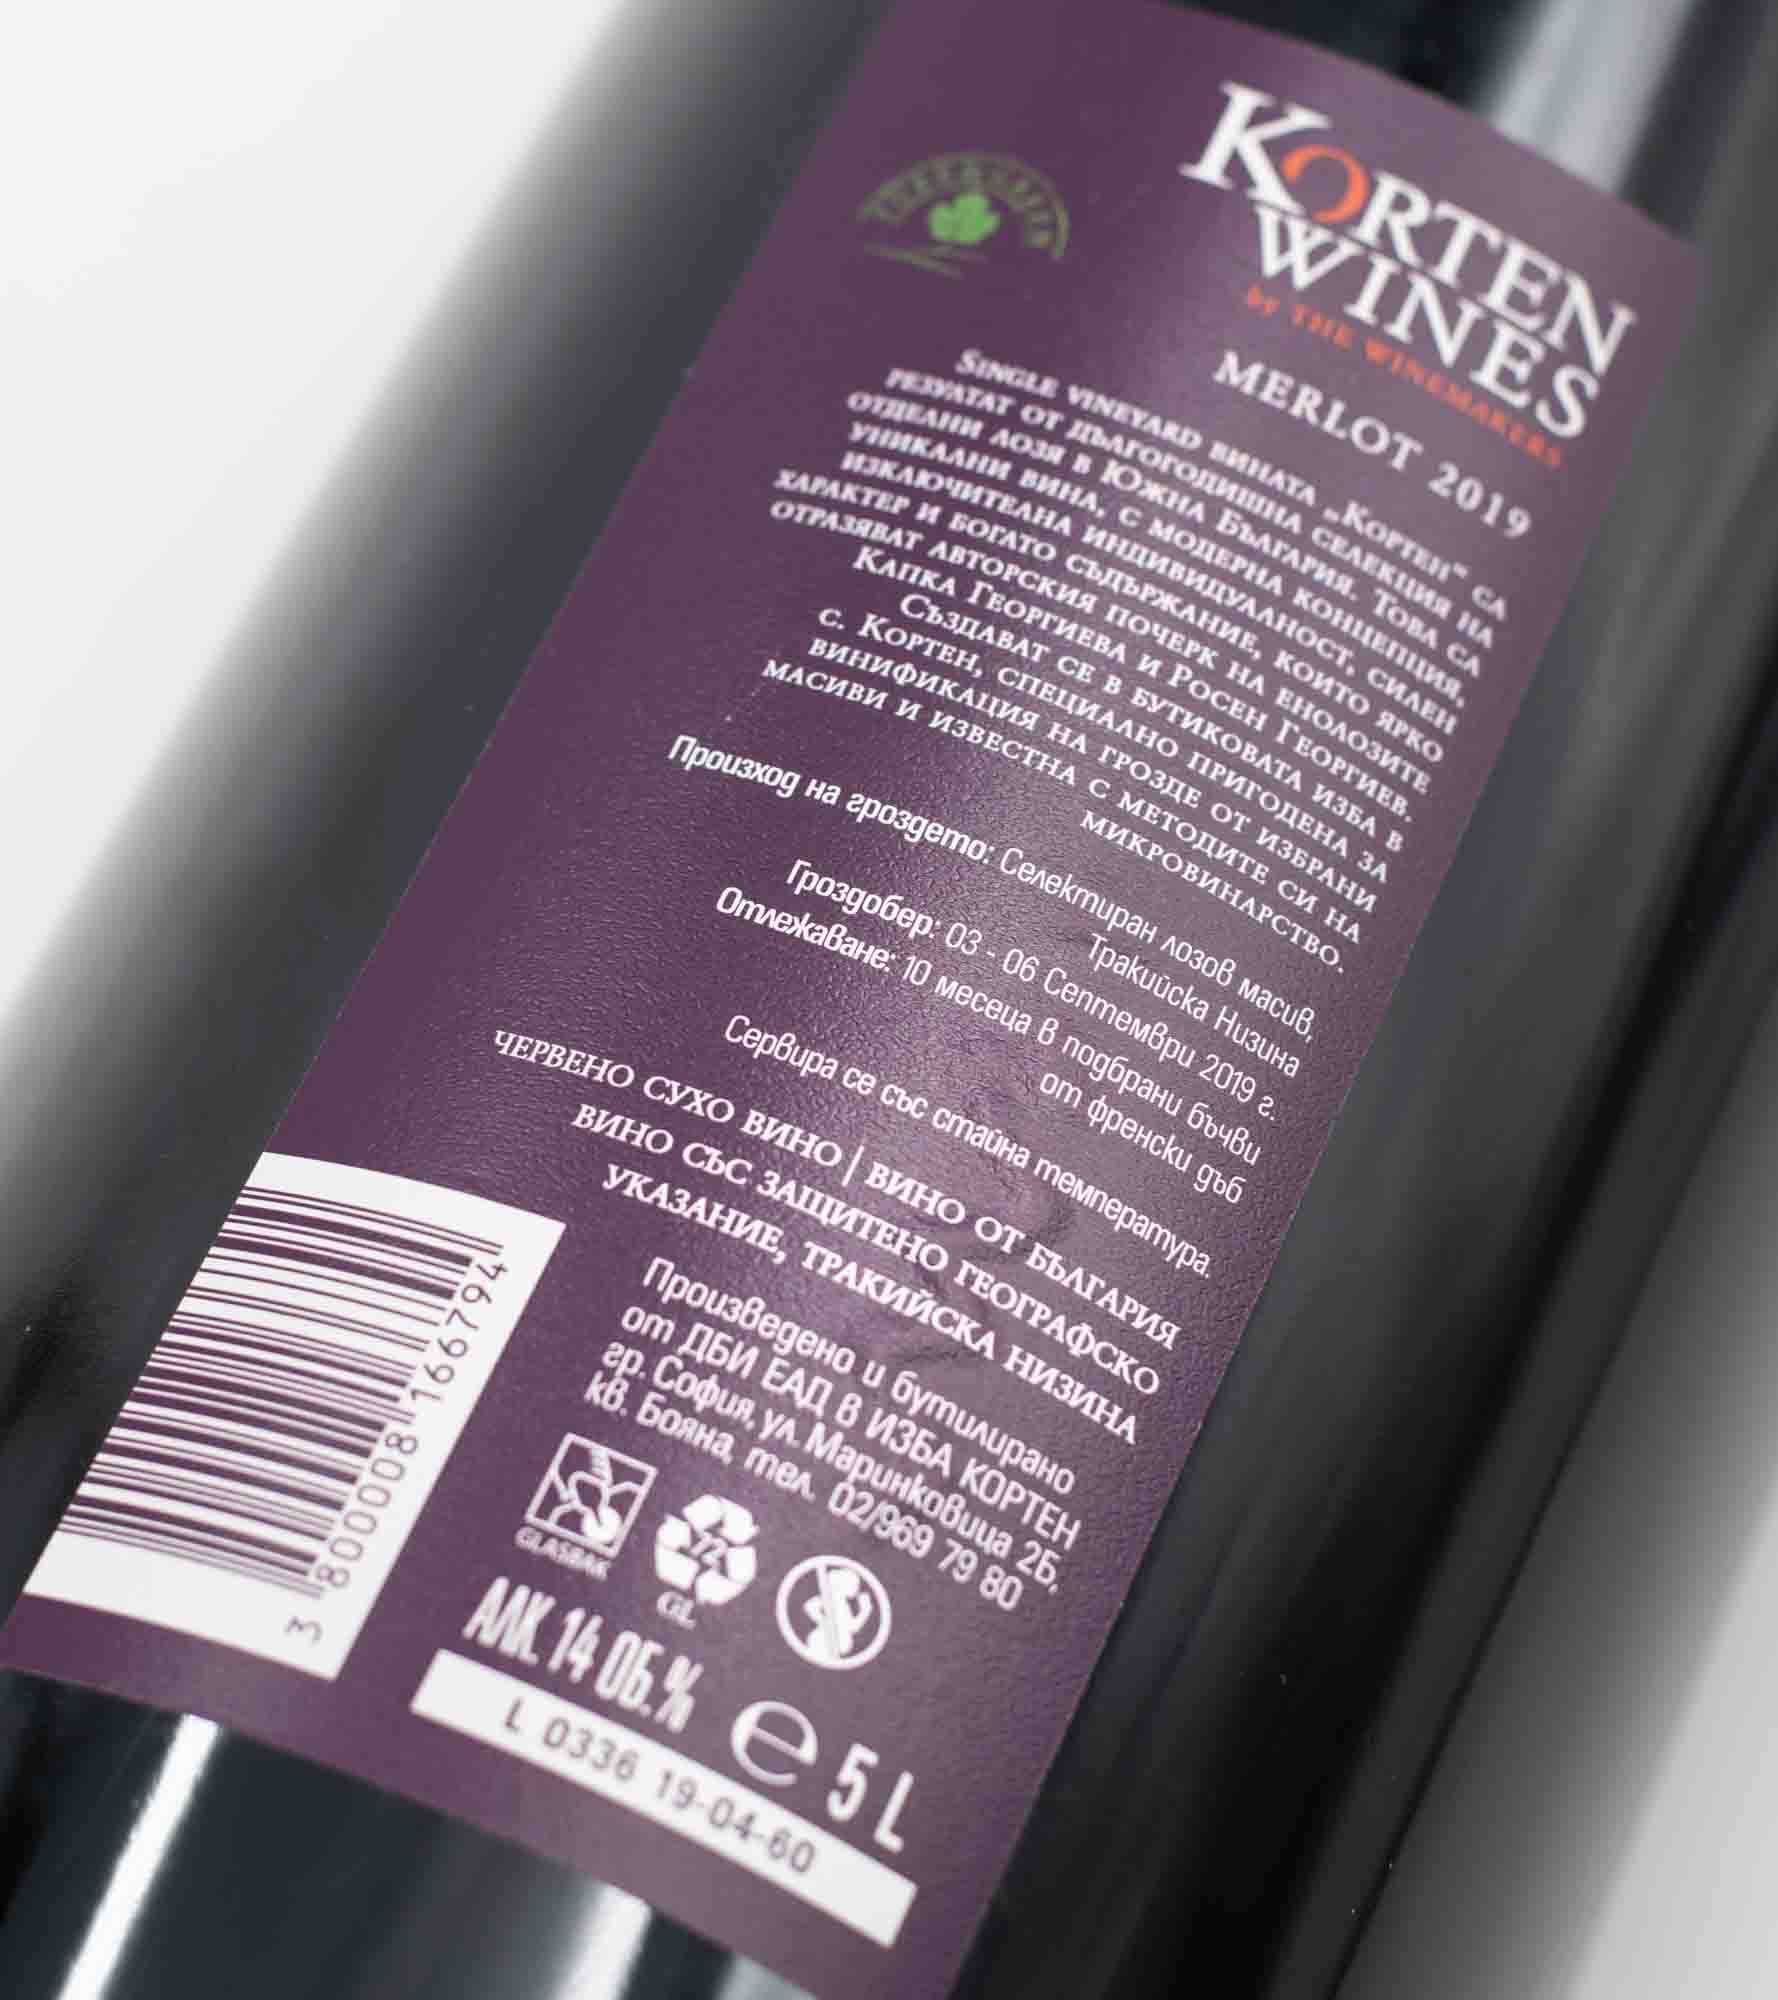 popis na etikete bulharského vína Korten Merlot